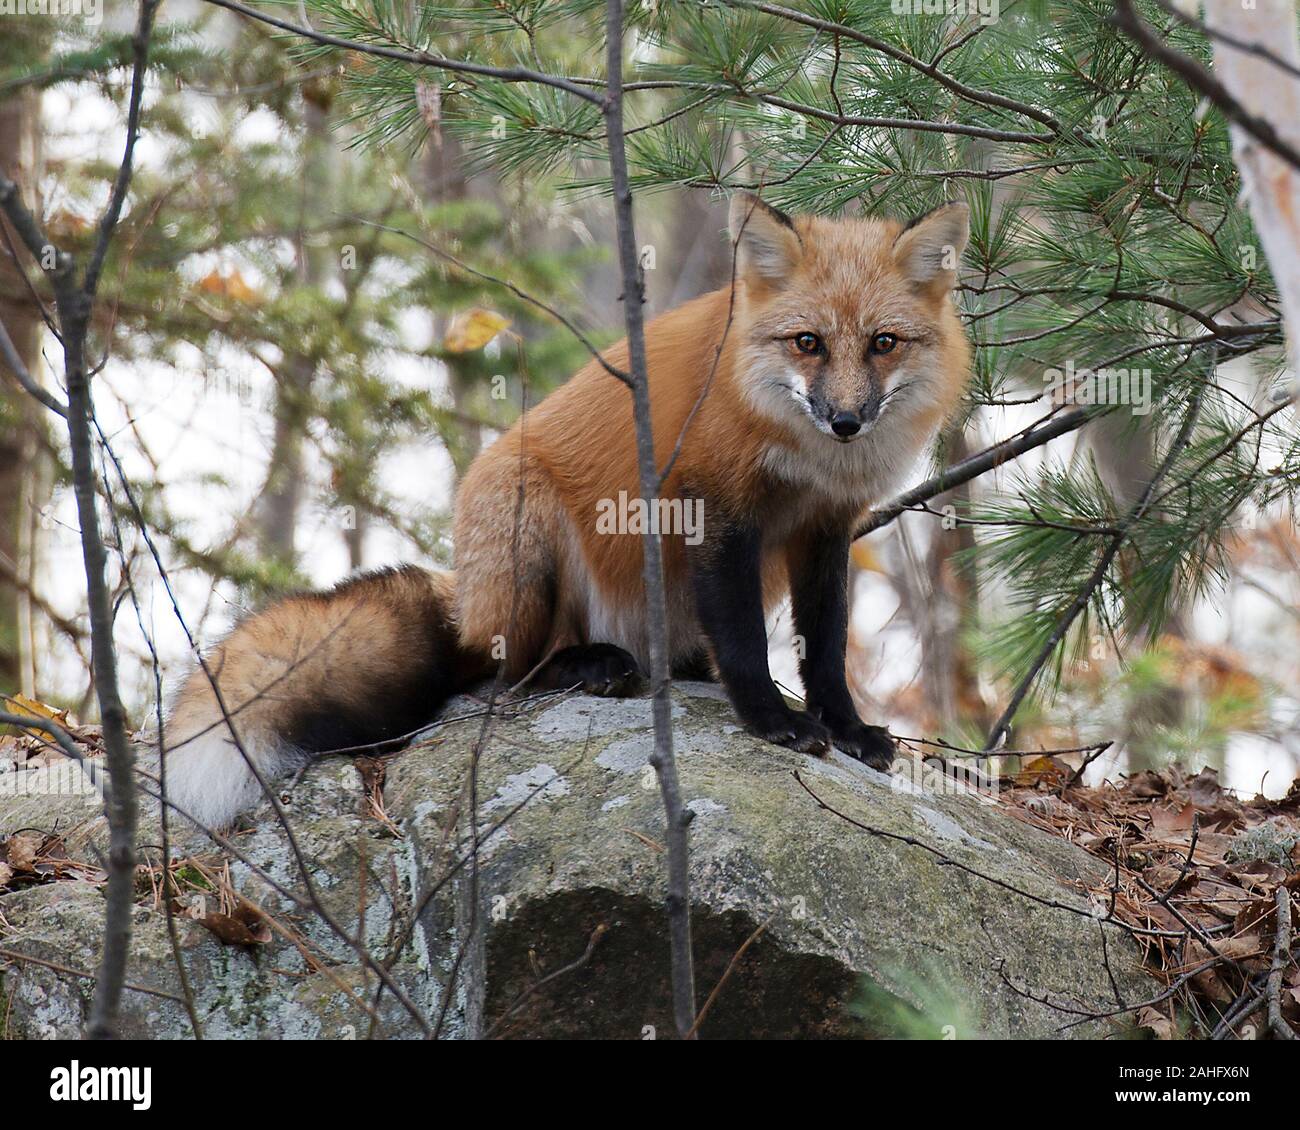 Fox Red Fox animale seduto su una roccia nella foresta godendo le sue circostanti e l'ambiente mentre esponendo il suo corpo, Testa, occhi, orecchie, naso, zampe, ta Foto Stock